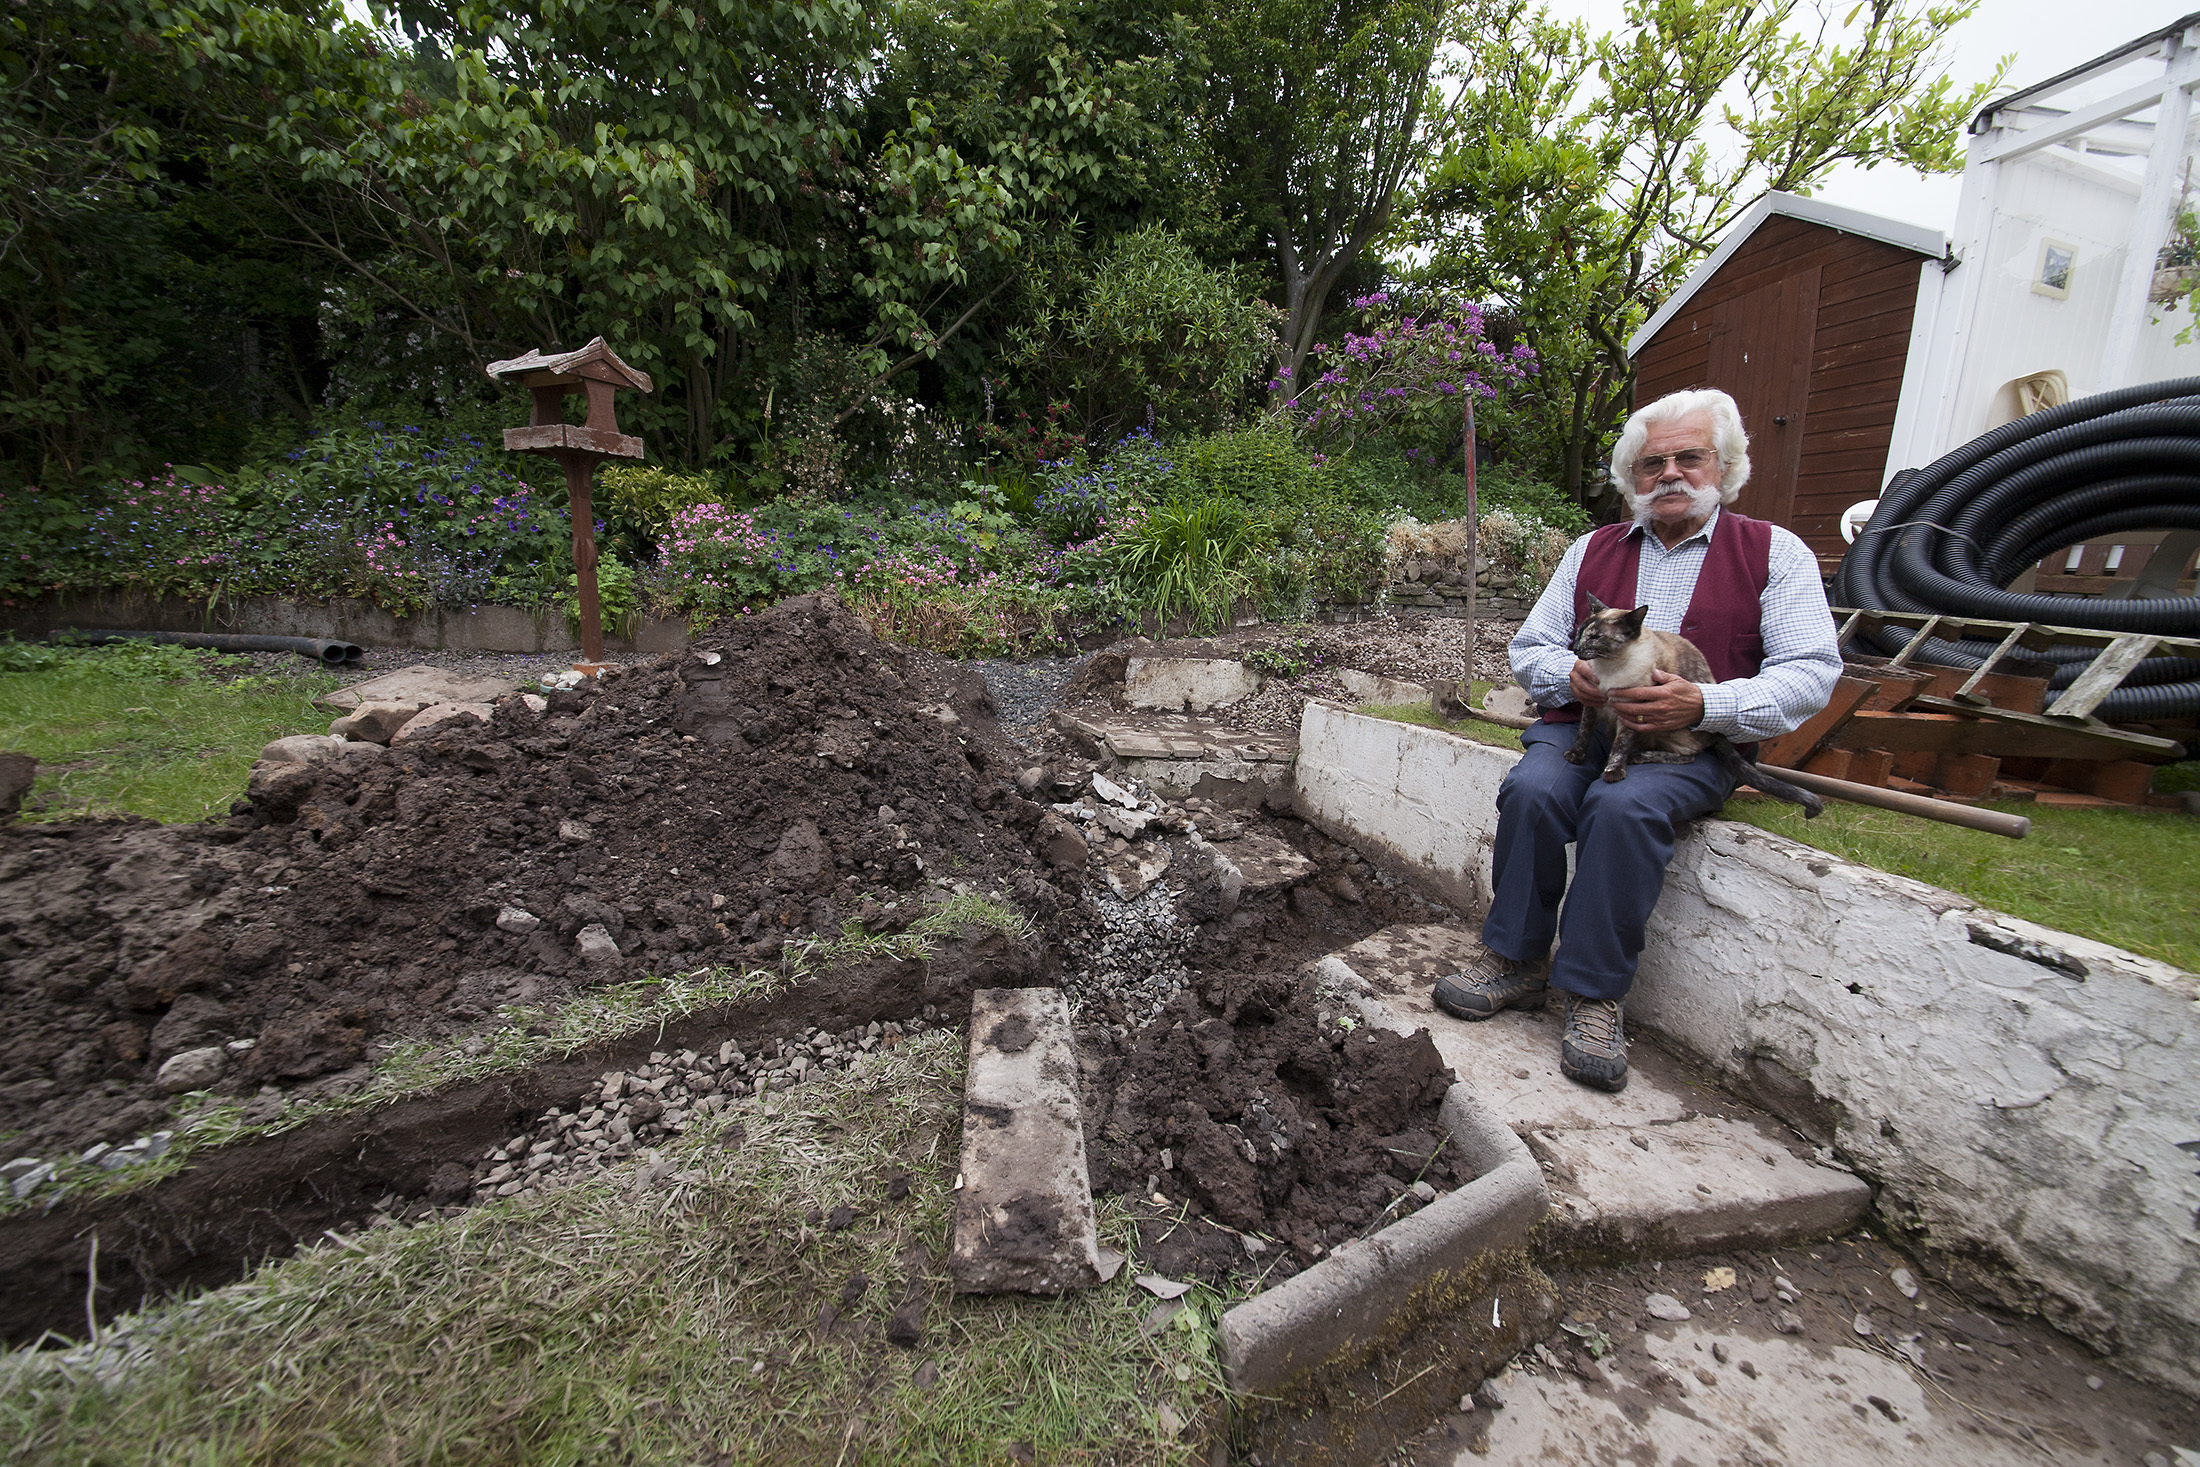 James Doig, with cat Coco, in his garden in June.